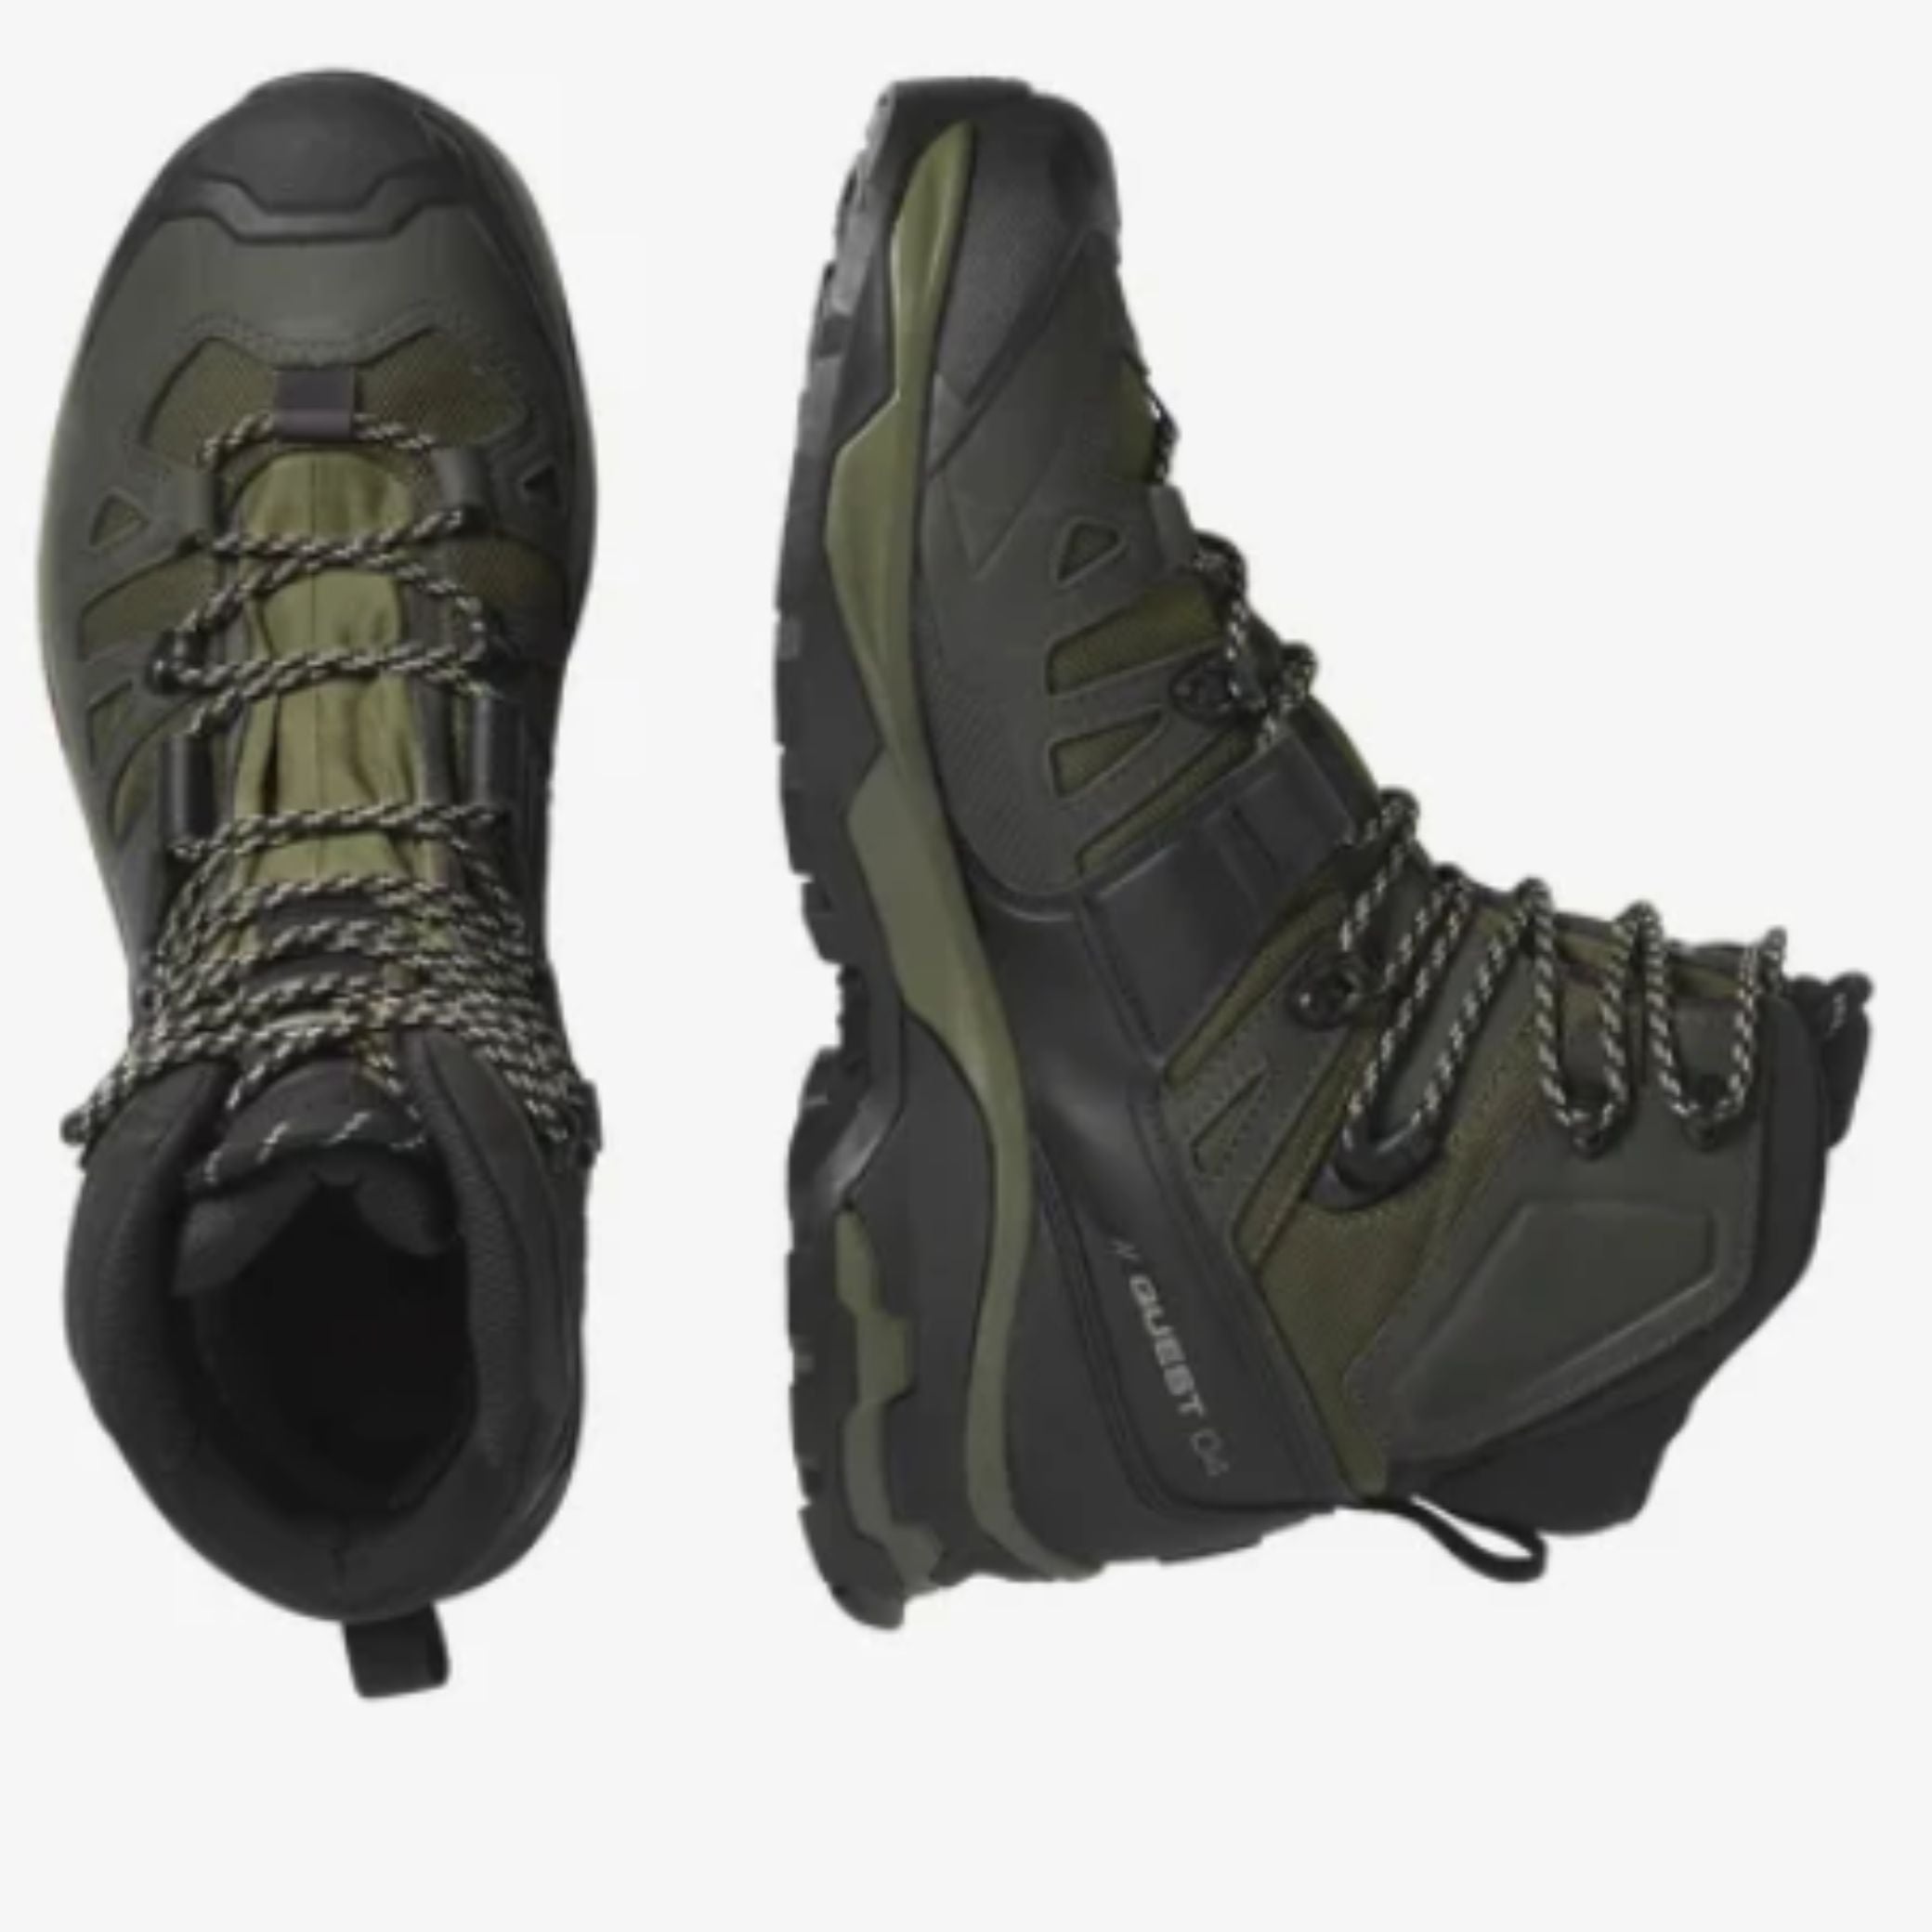 Salomon Quest Men's 4 GTX Hiking Boots | SALOMON | Portwest - The Outdoor Shop